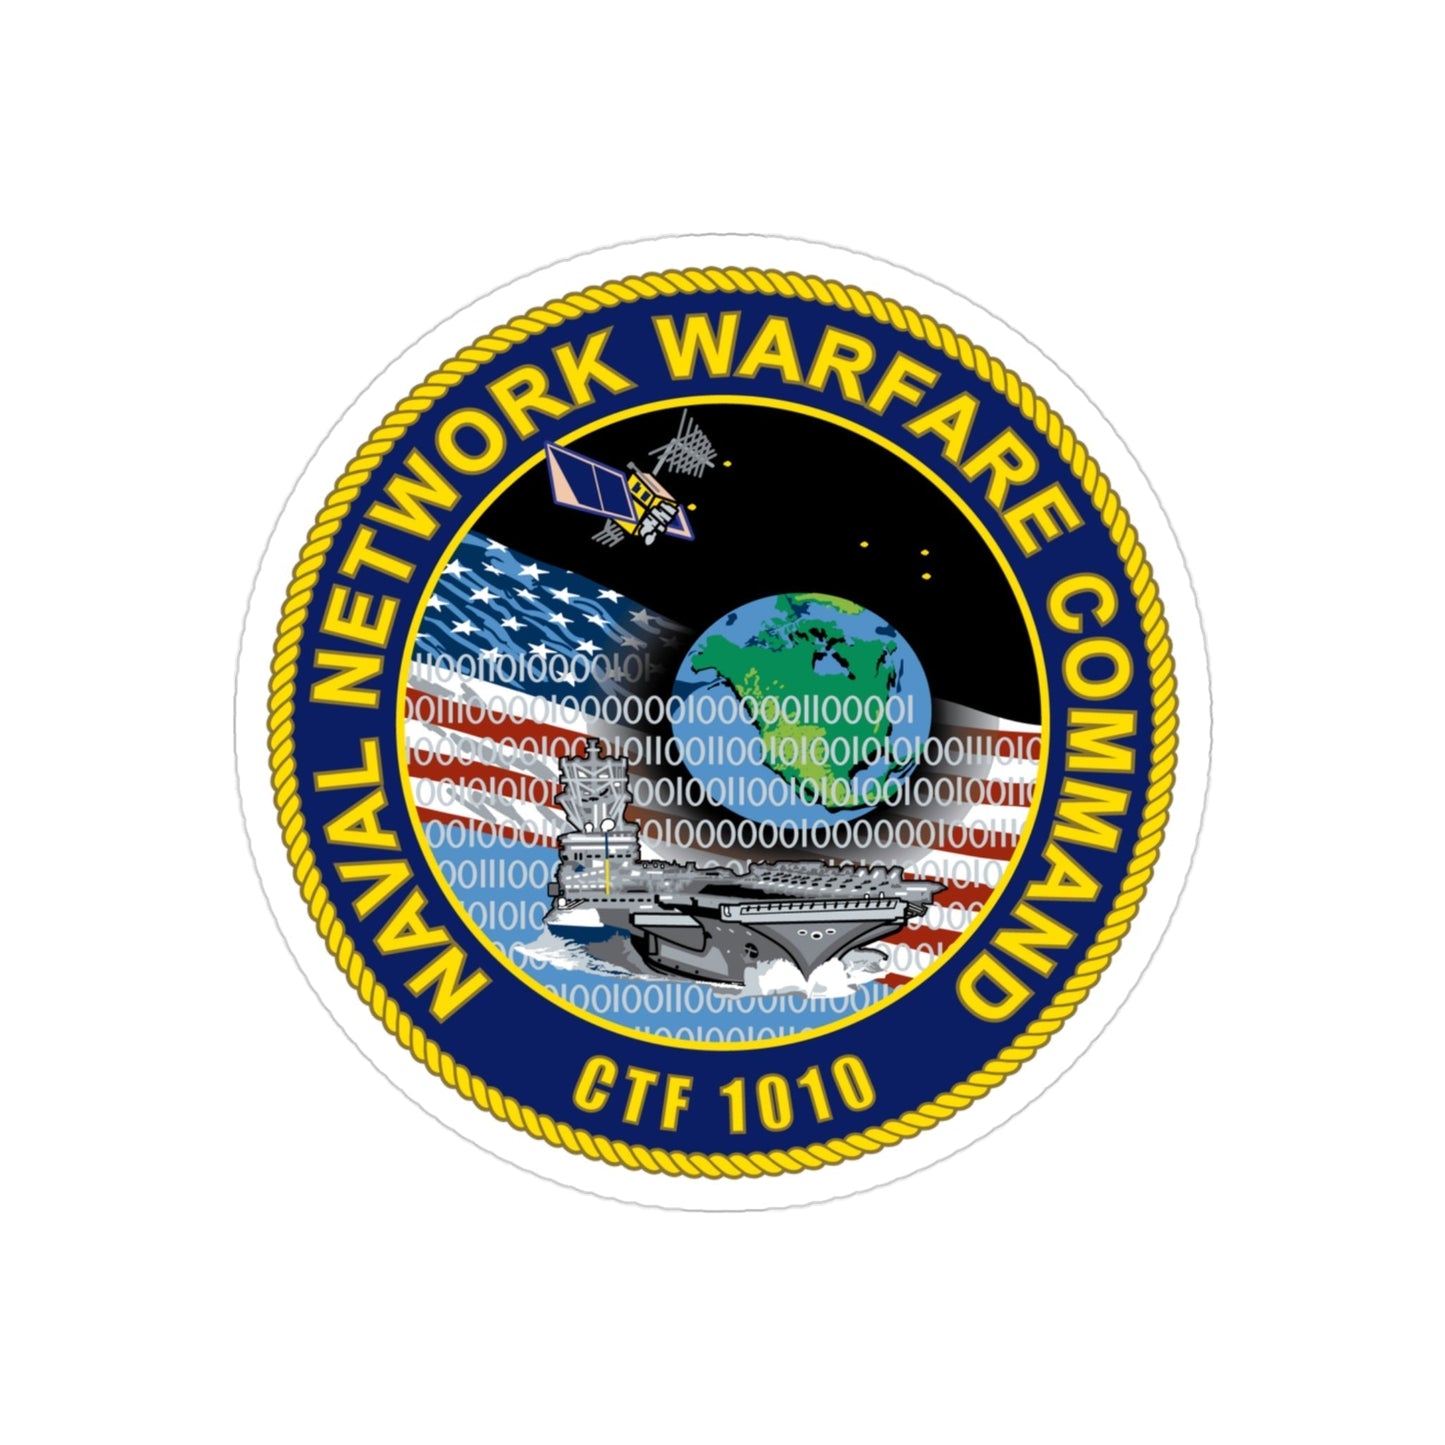 Naval Network Warfare Command CFT 1010 (U.S. Navy) Transparent STICKER Die-Cut Vinyl Decal-3 Inch-The Sticker Space